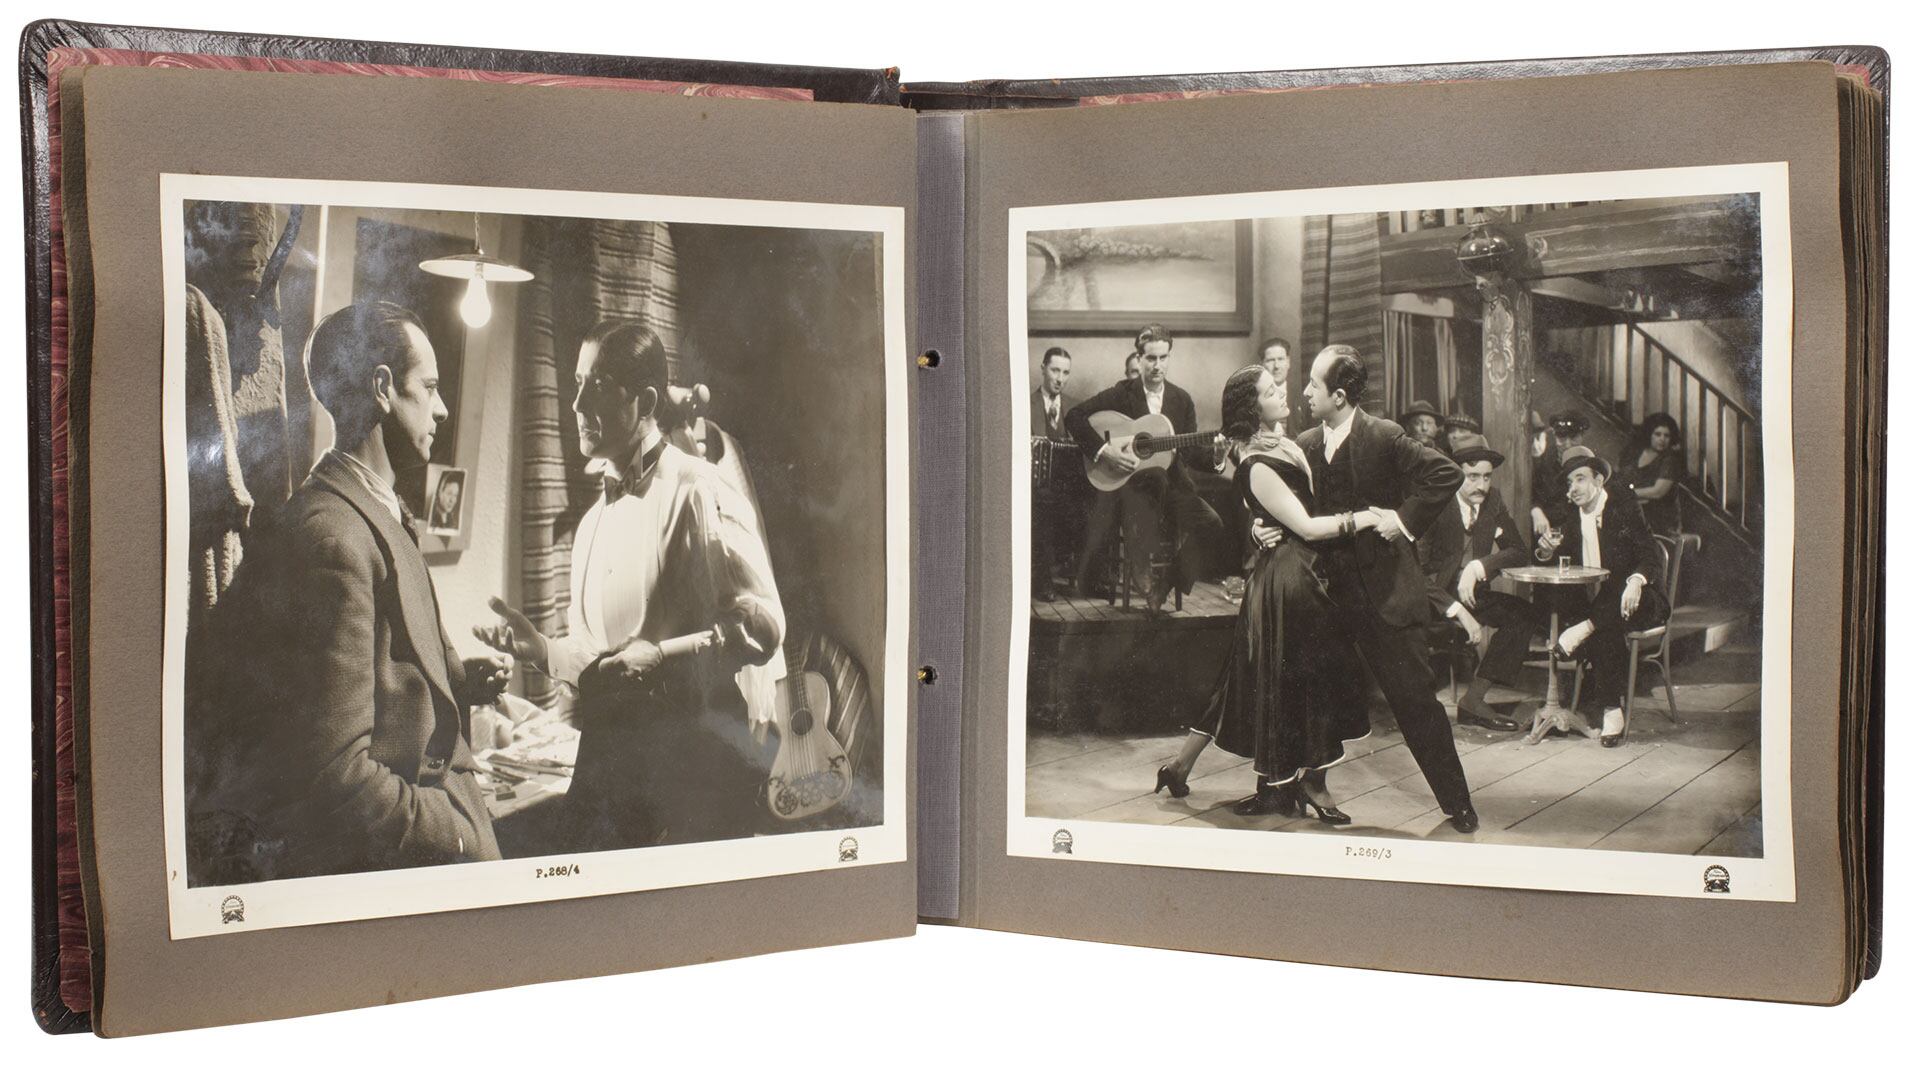 Álbumes originales de fotografías de las películas "Luces de Buenos Aires" y "Melodía de arrabal". Paramount Pictures, Joinville, París (1932)